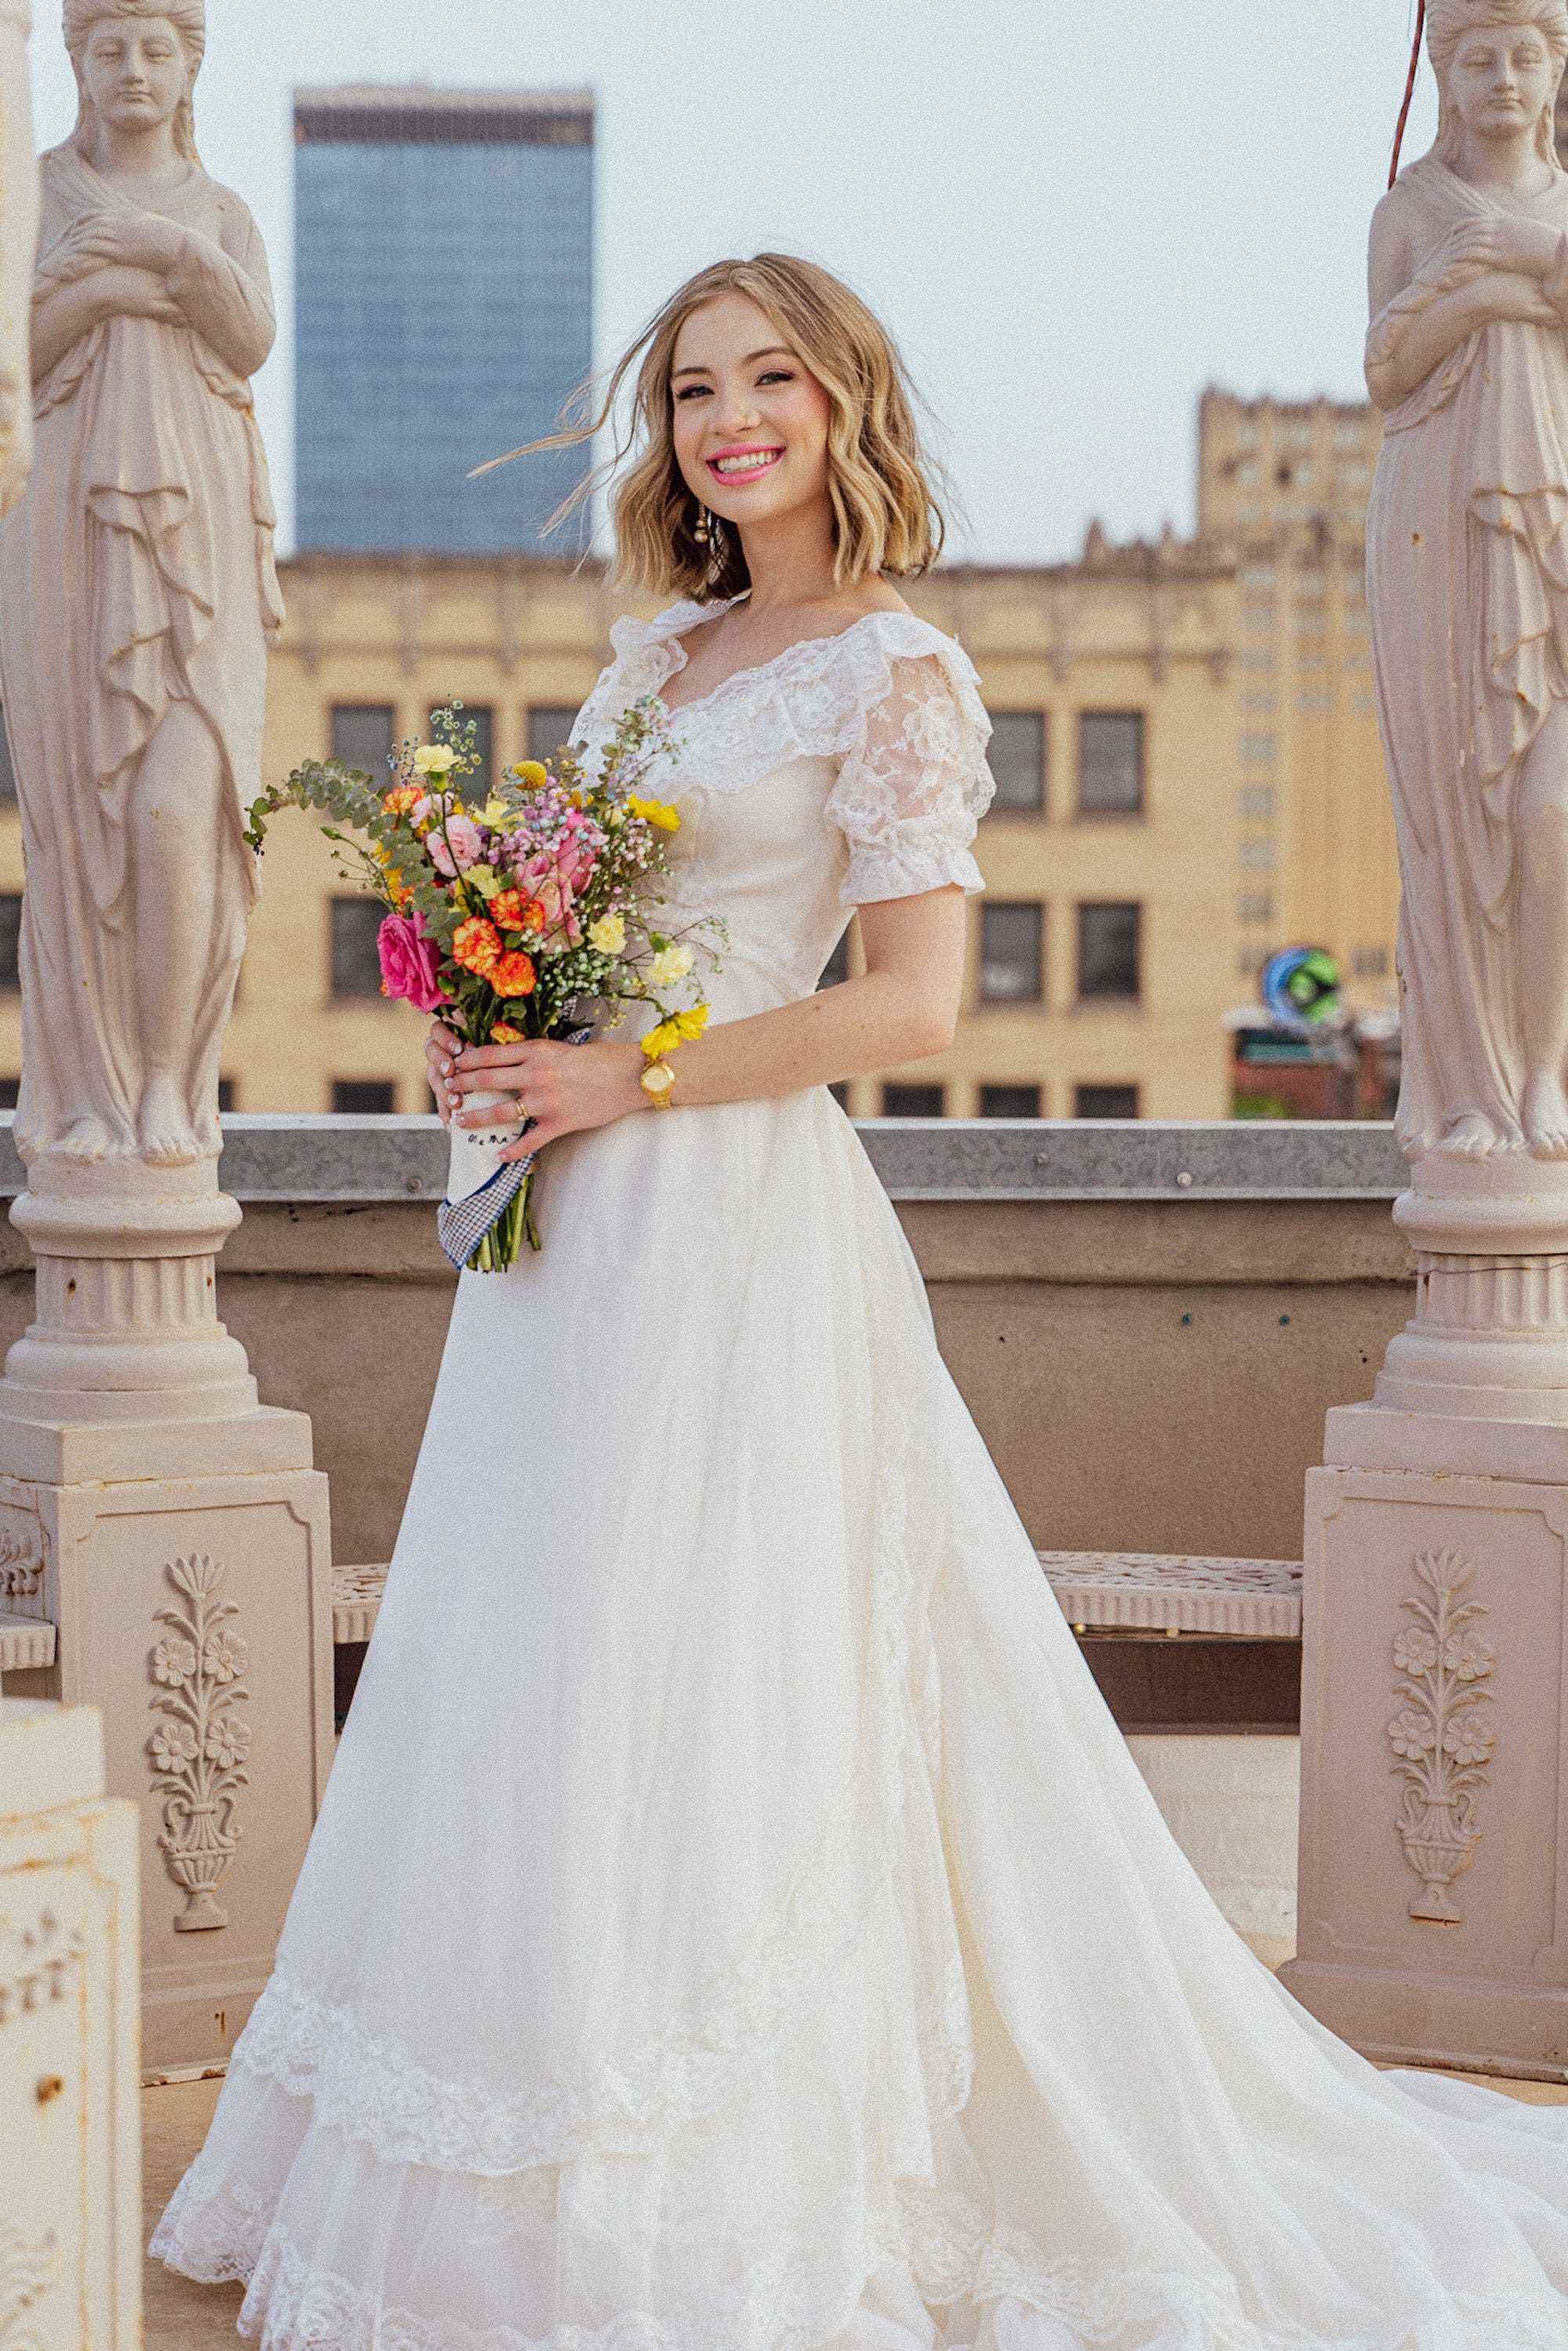 Eine Braut lächelt in ihrem Hochzeitskleid inmitten von Statuen.